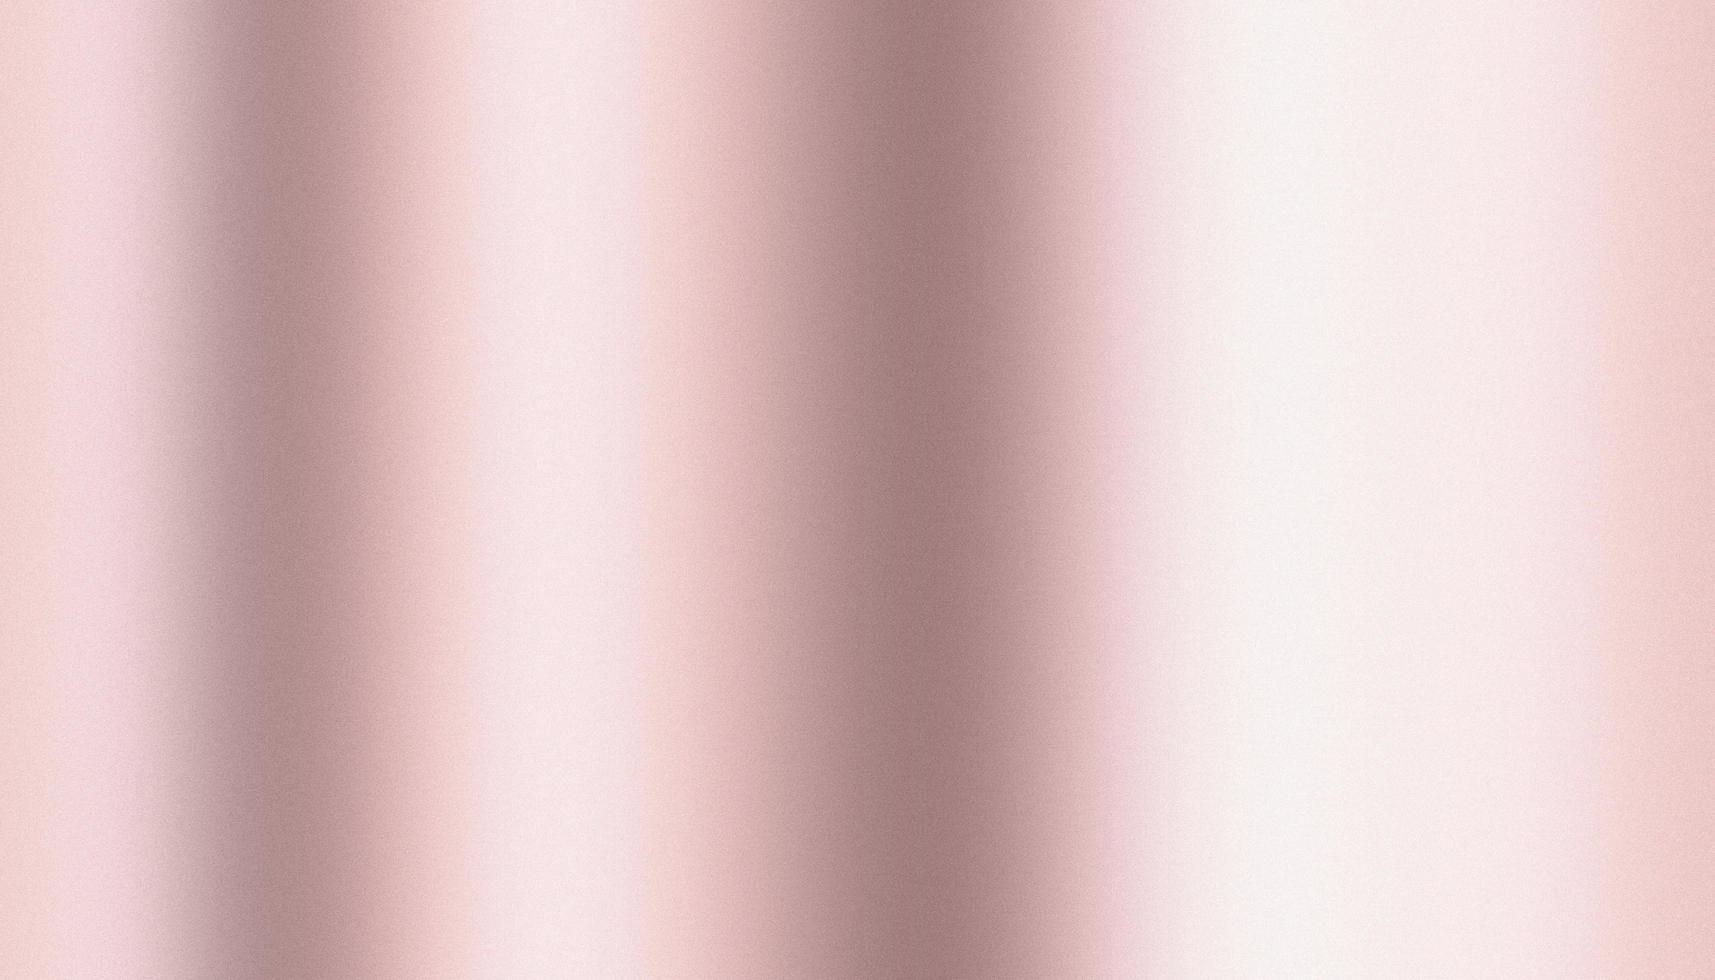 Rosa Rose Gold Farbverlauf verschwommener Hintergrund mit rauem und rauschendem weichen leuchtenden Hintergrund, Hintergrundtextur für Design foto